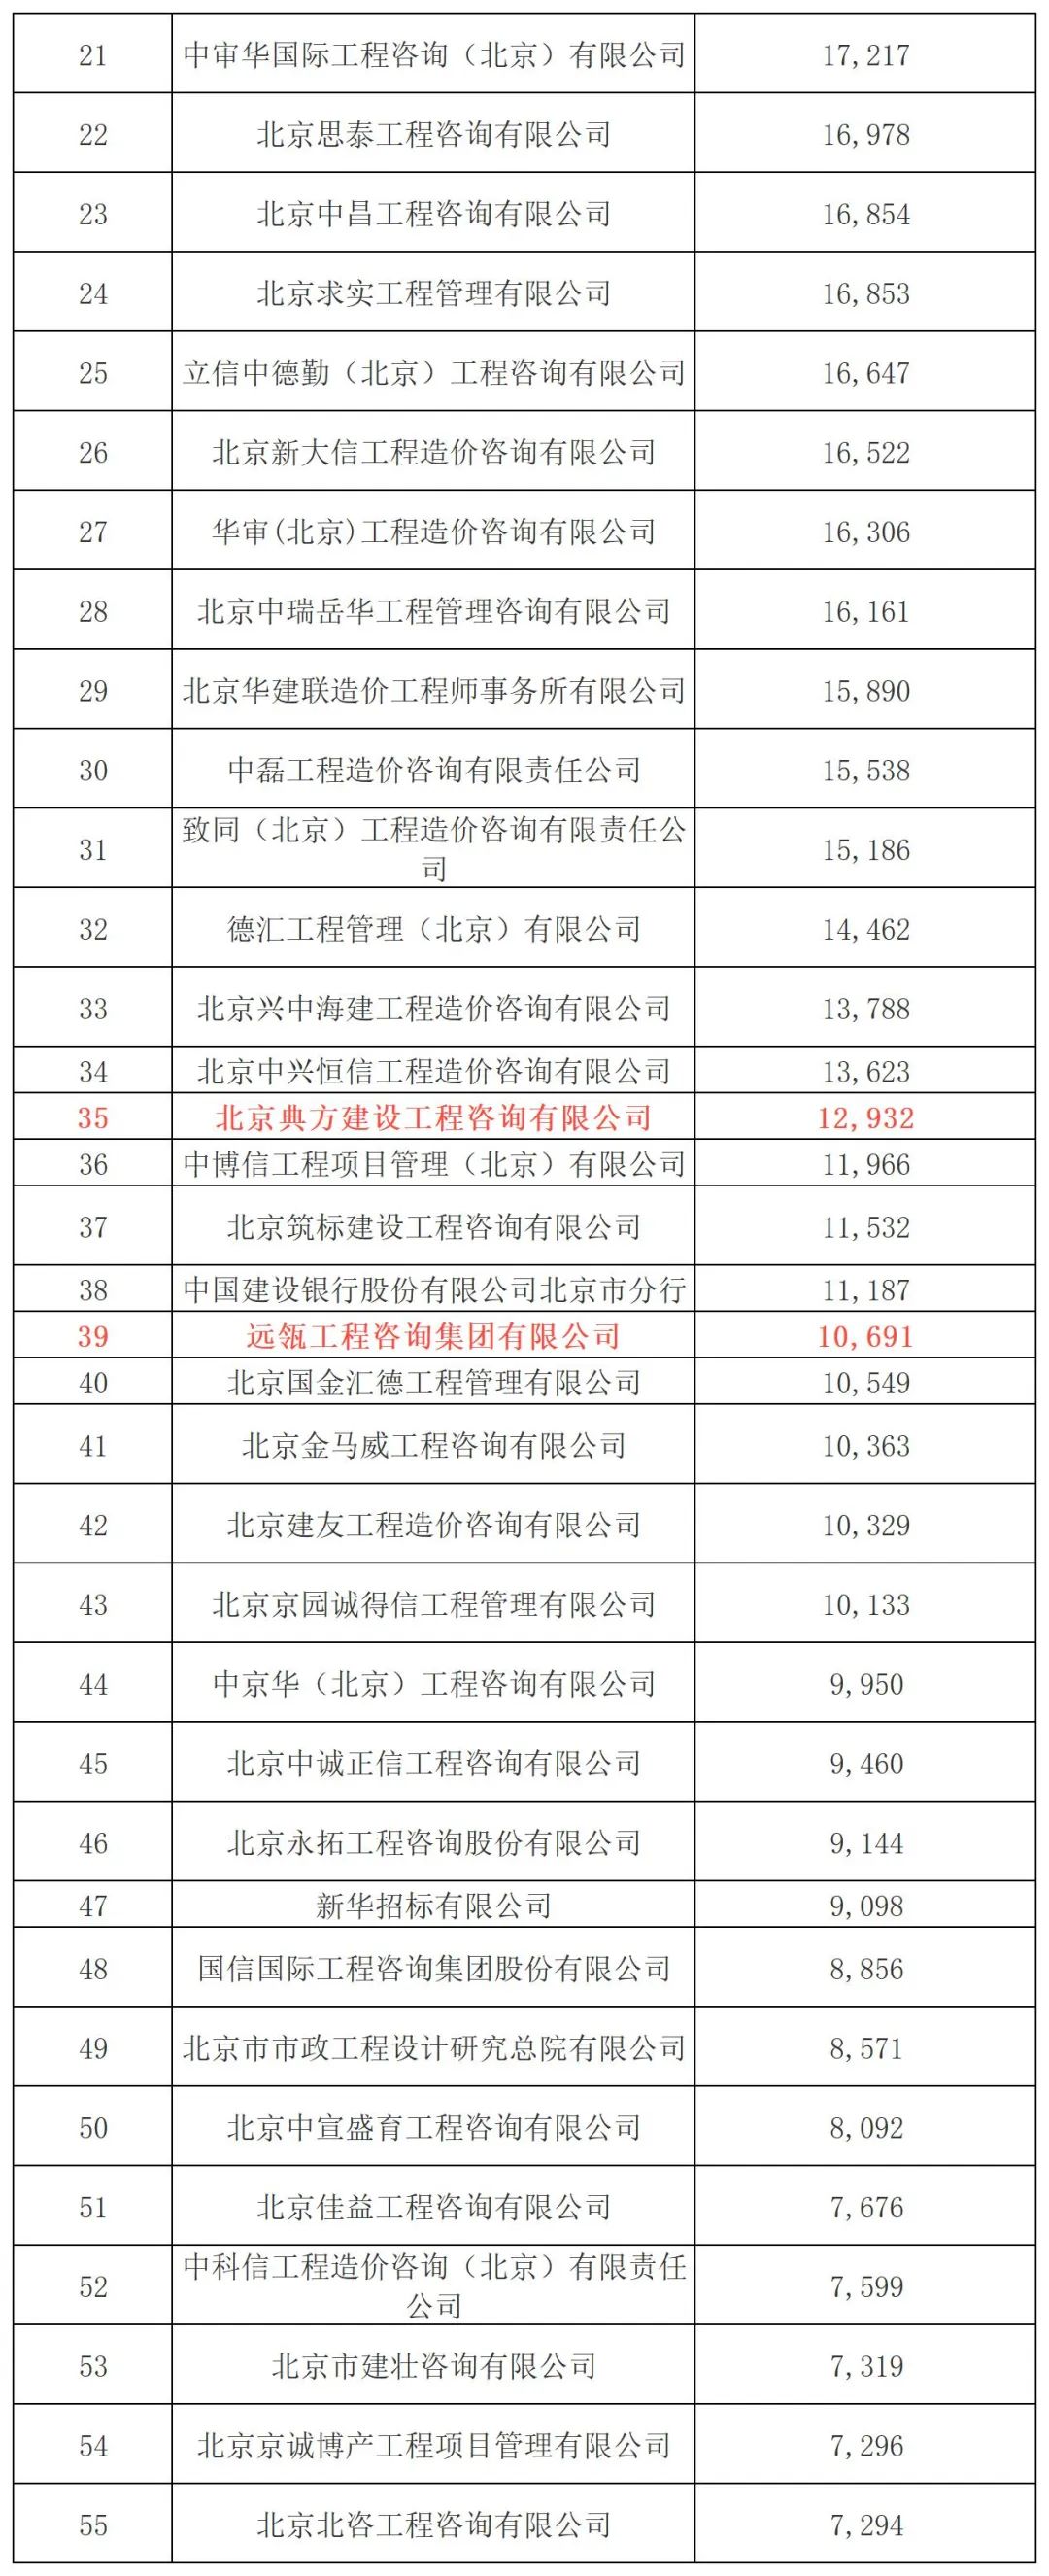 2021年北京市工程造价咨询企业收入排名：北京建智达位列第14名！三家子公司合计收入50,377万元！